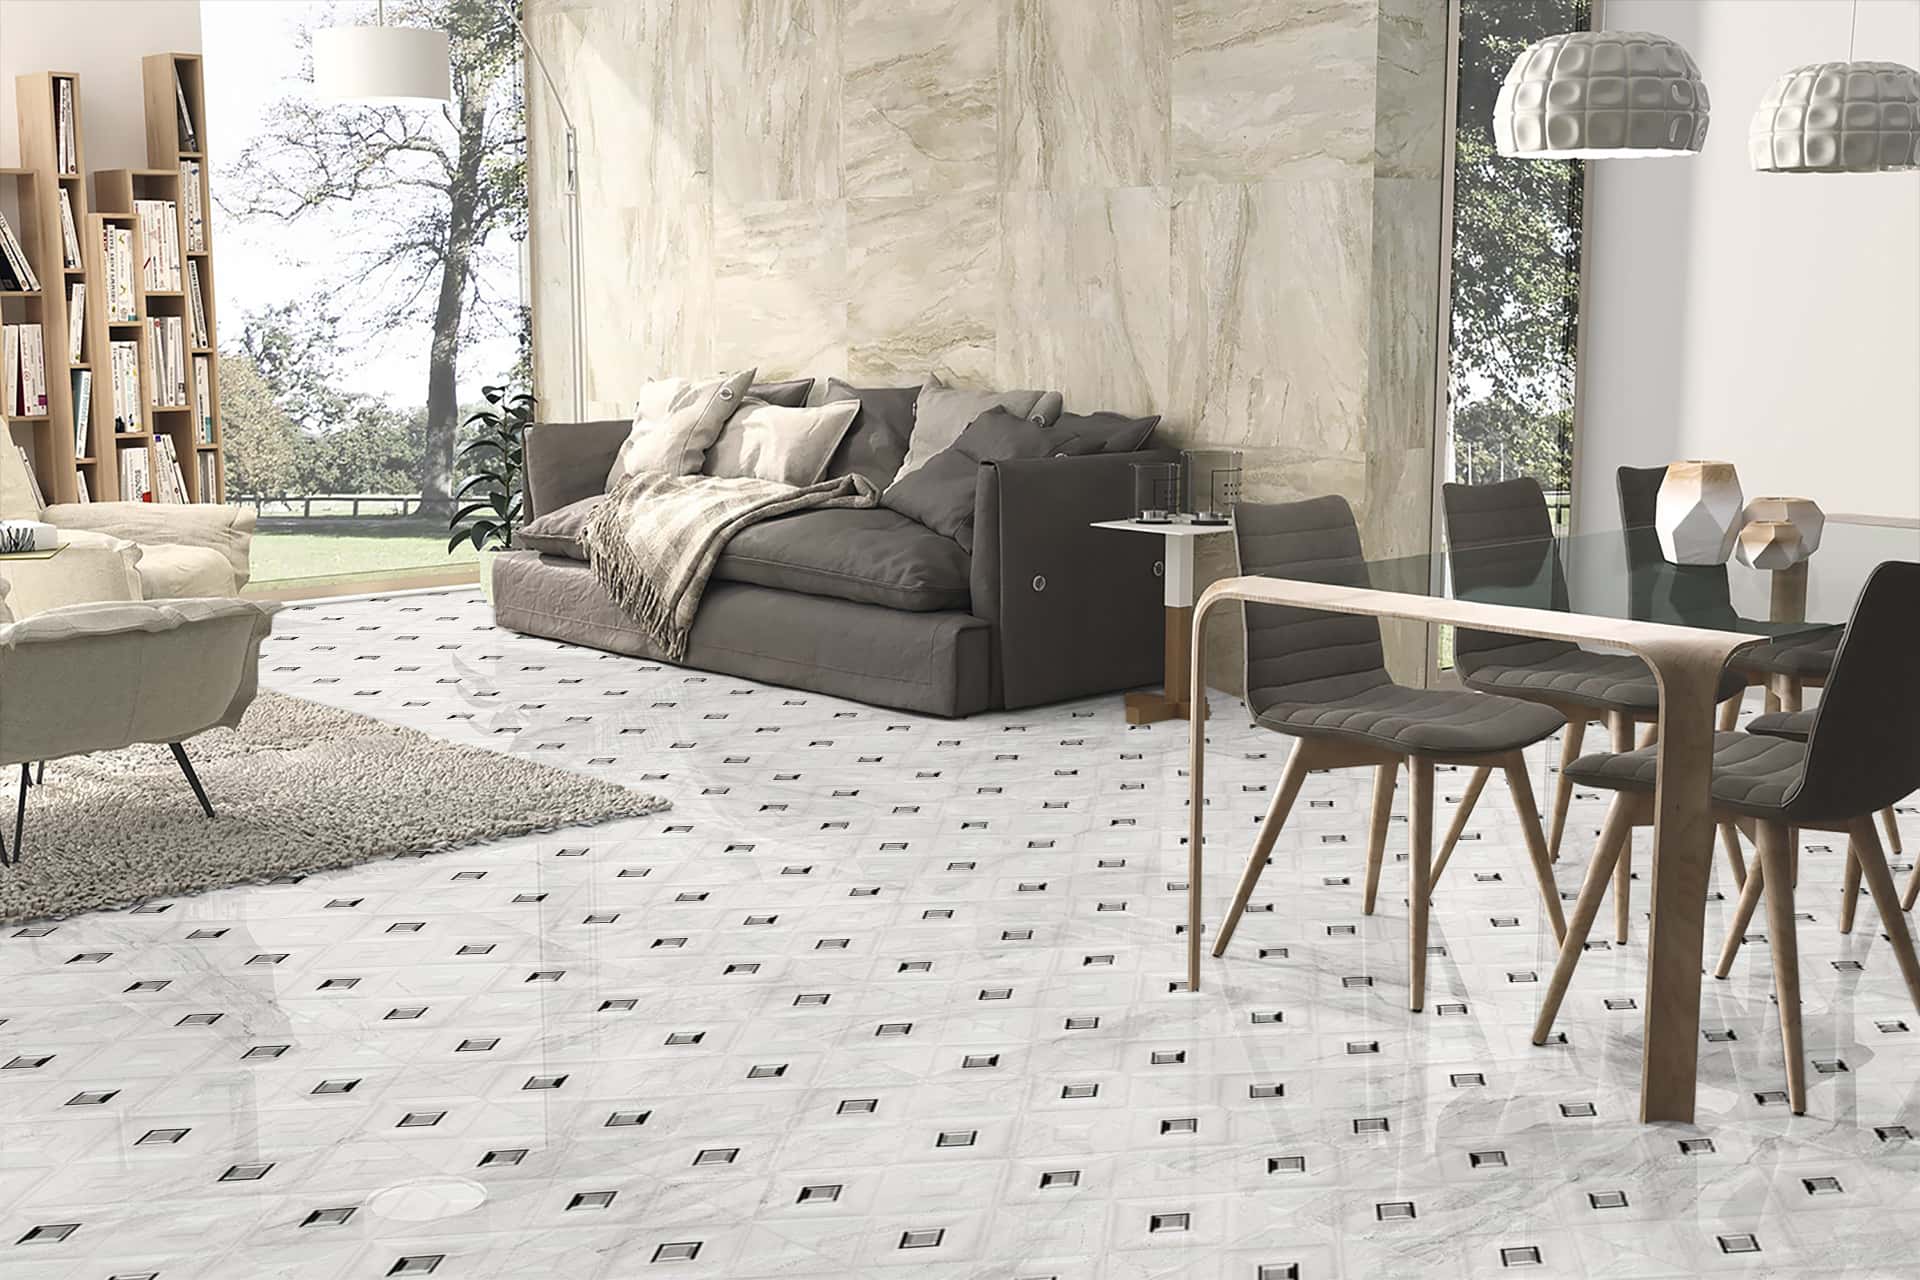 digital floor tiles